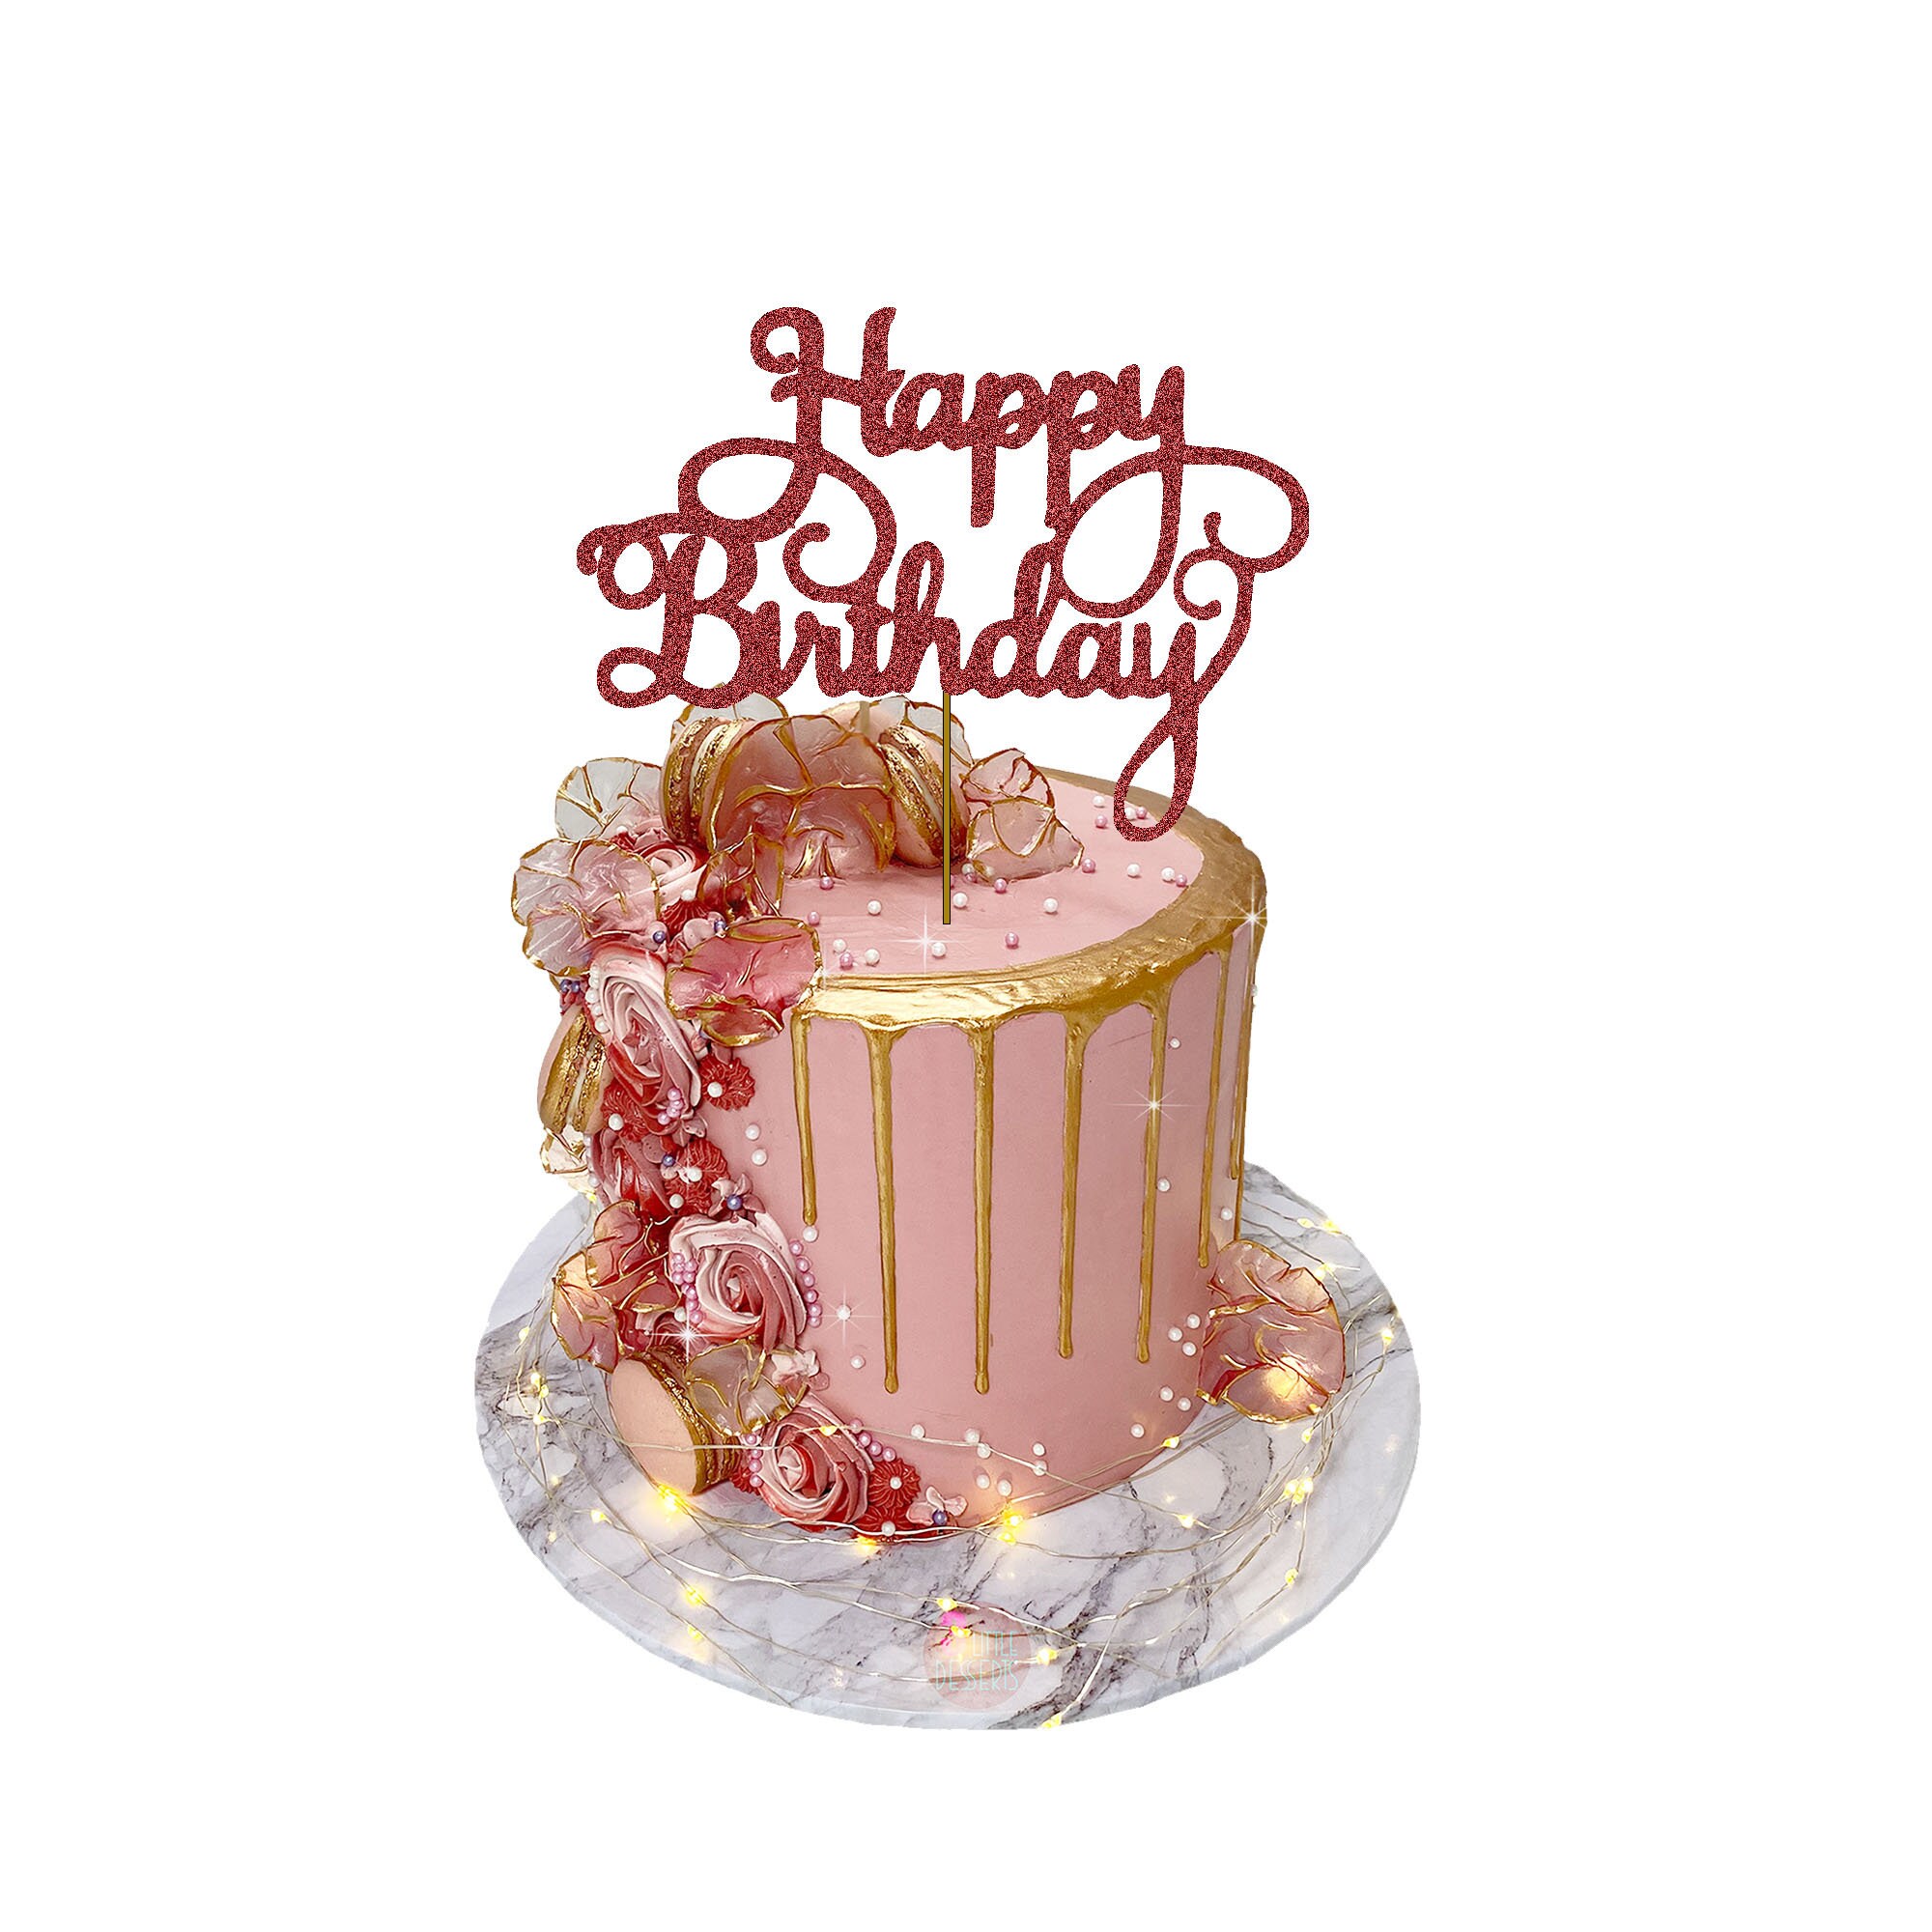 Décor de gâteau : joyeux anniversaire en bois 10.2 x 12.9 cm